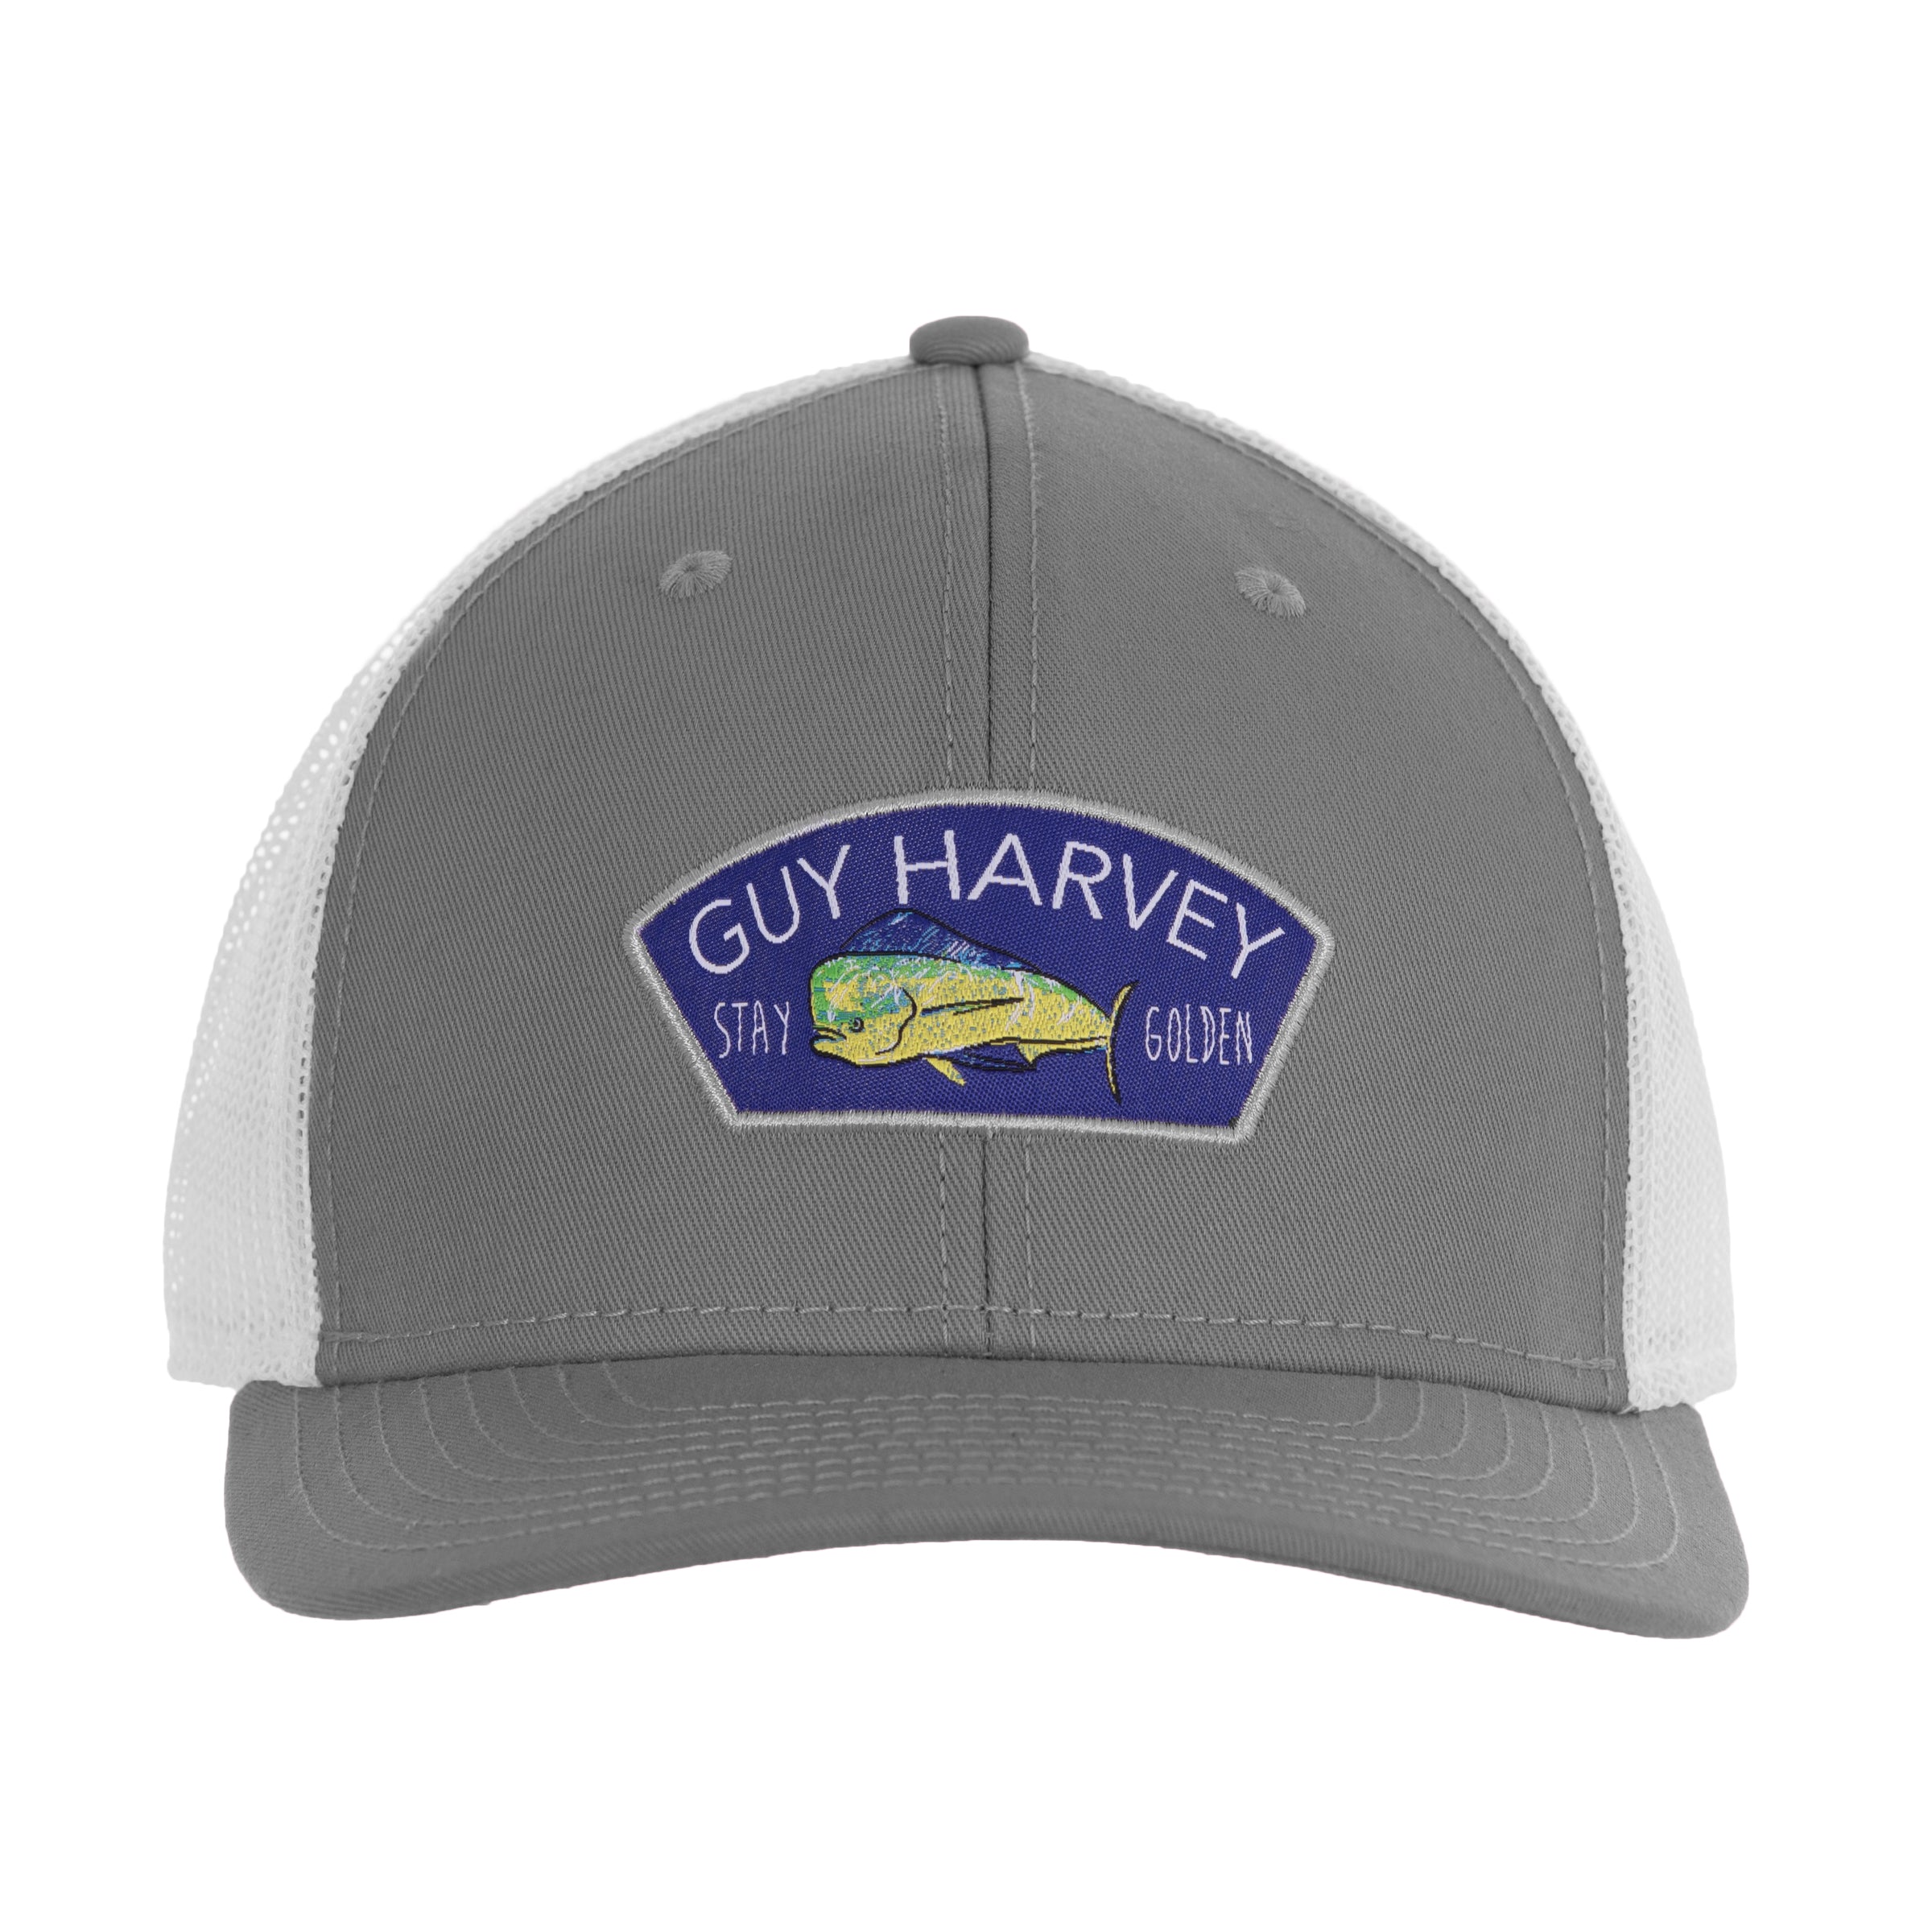 All Headwear – Guy Harvey